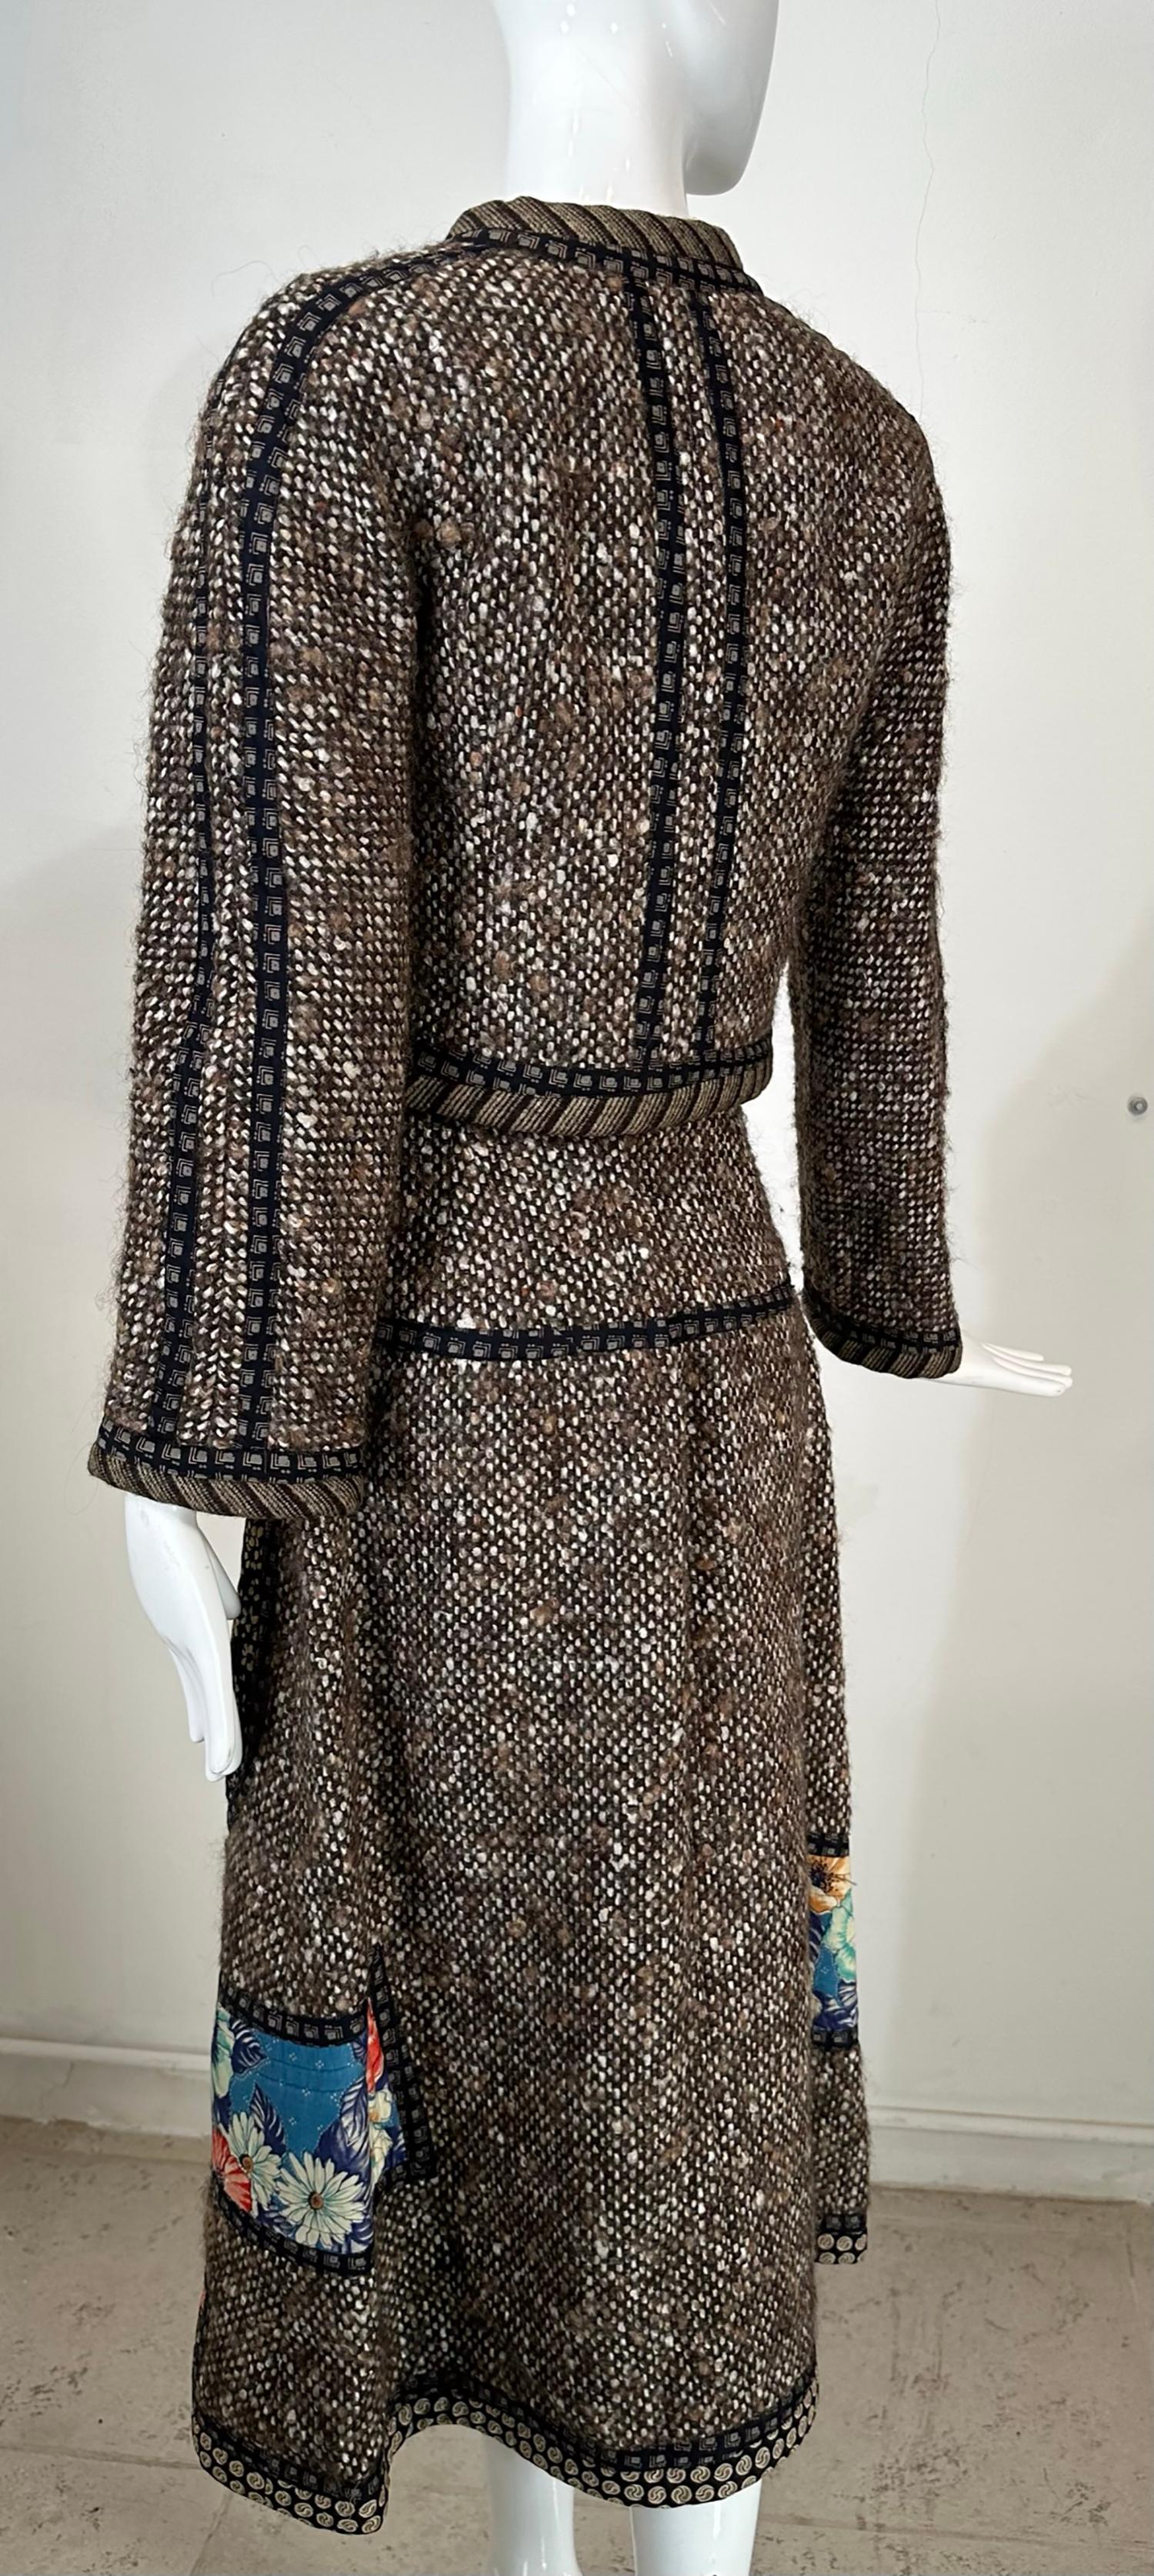 Koos van den Akker Wool & Quilted Cotton Print Cropped Jacket & Skirt Set 1970s 1